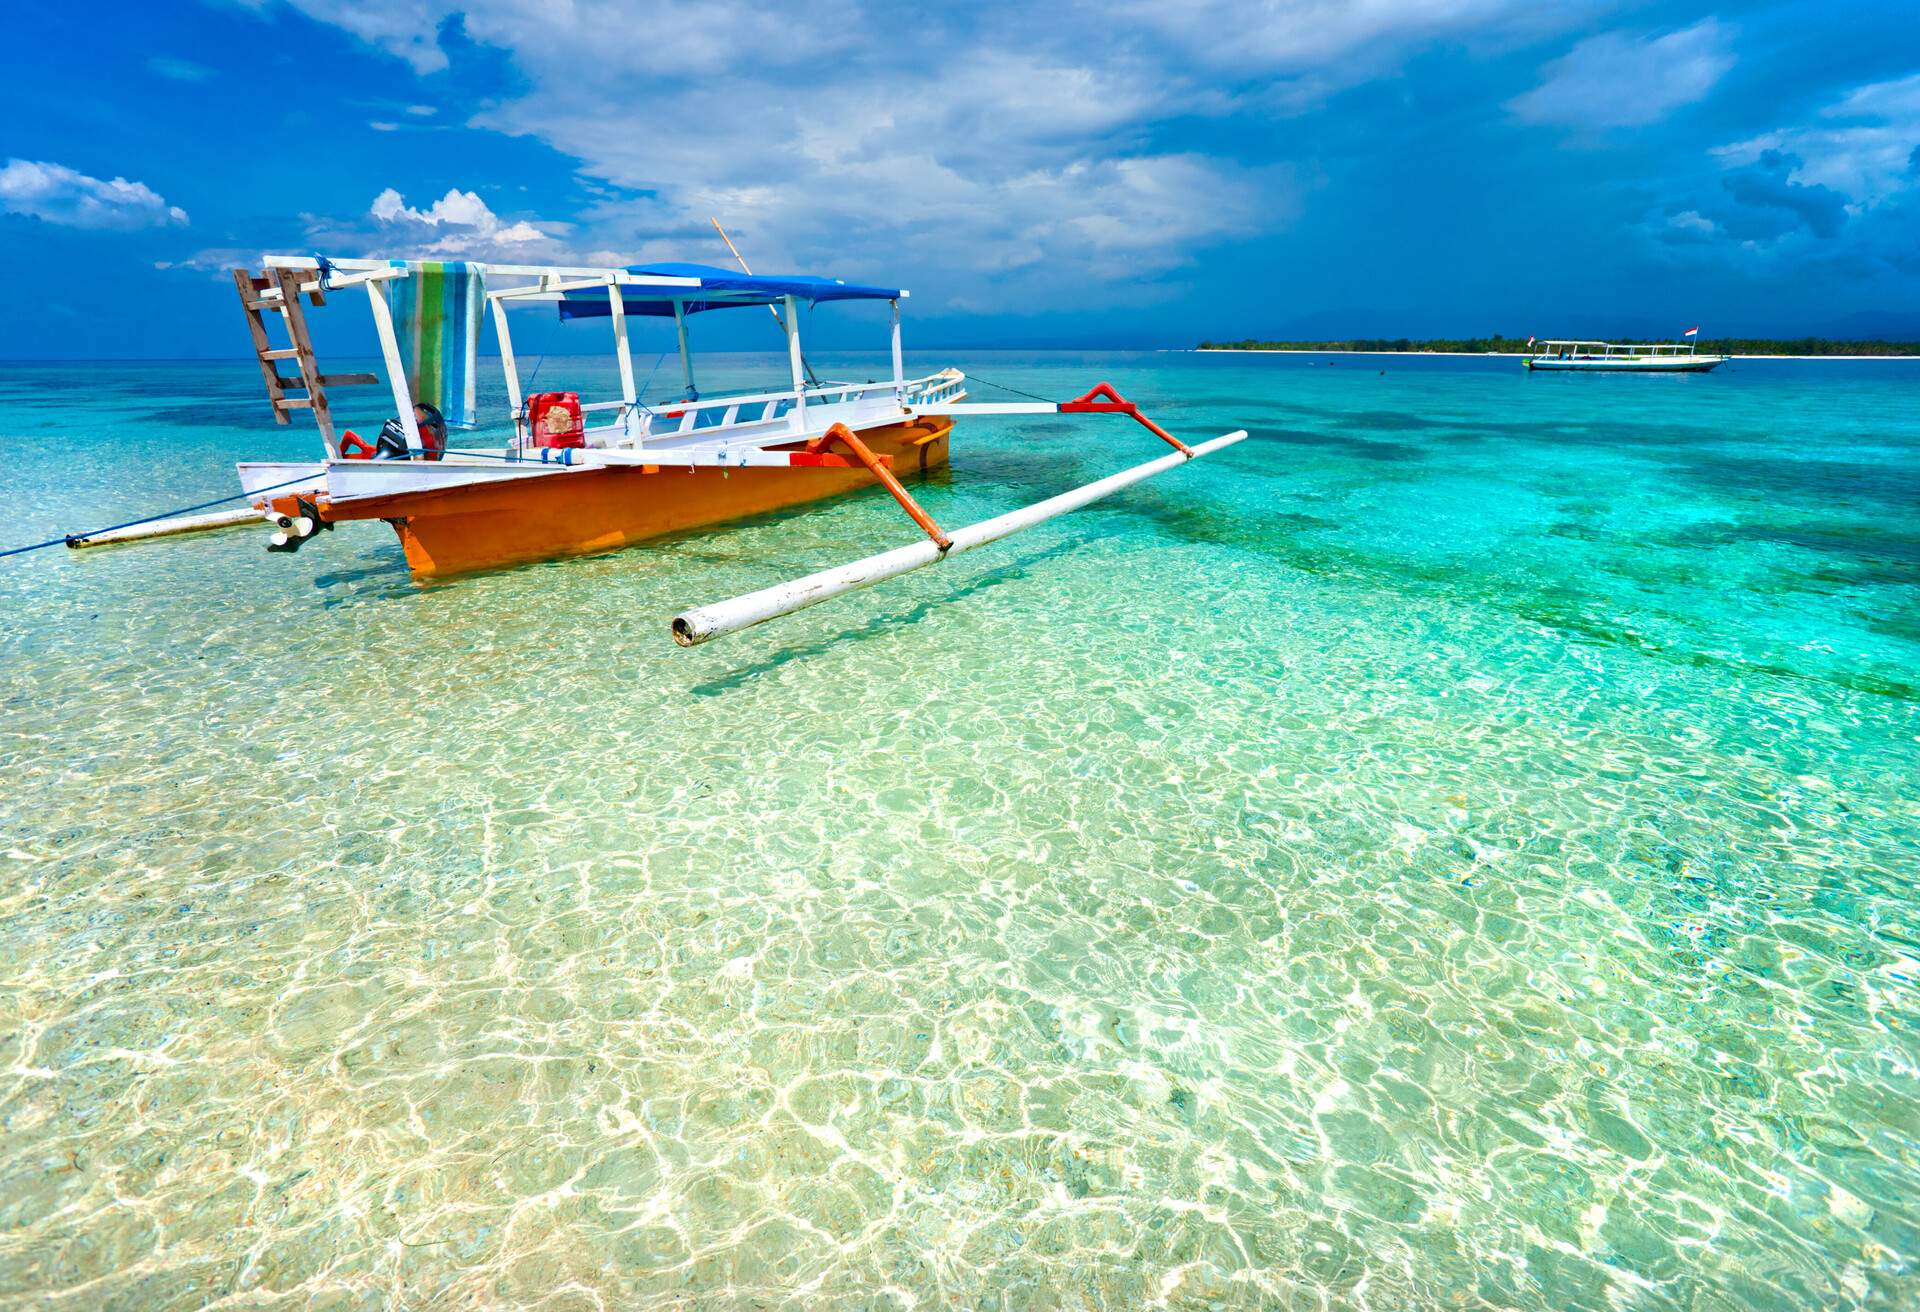 Beautiful sea and coastlines of Gili Meno, Indonesia.